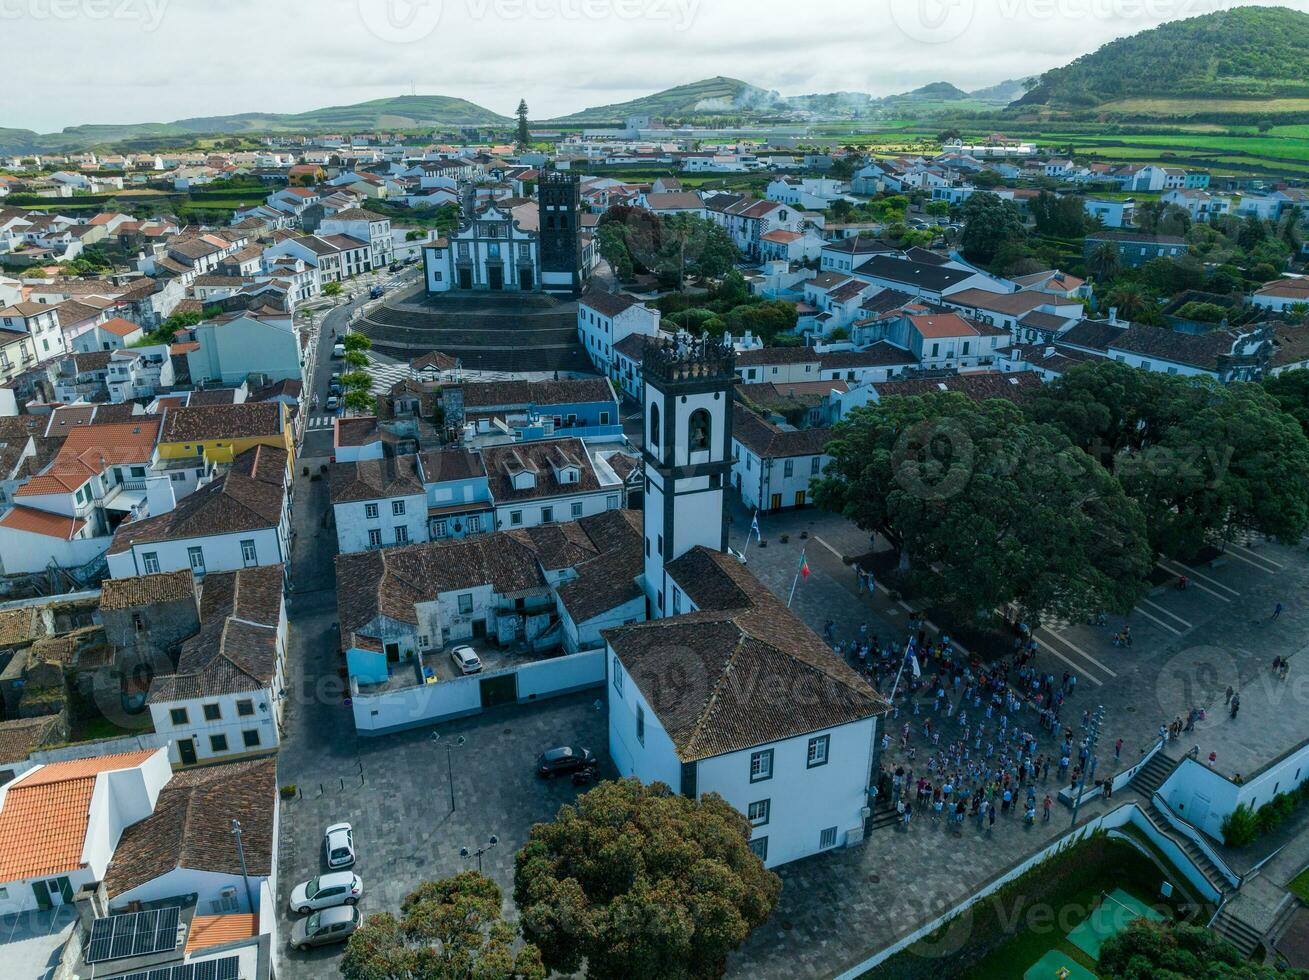 Chiesa di nostro signora di il stella - Portogallo foto